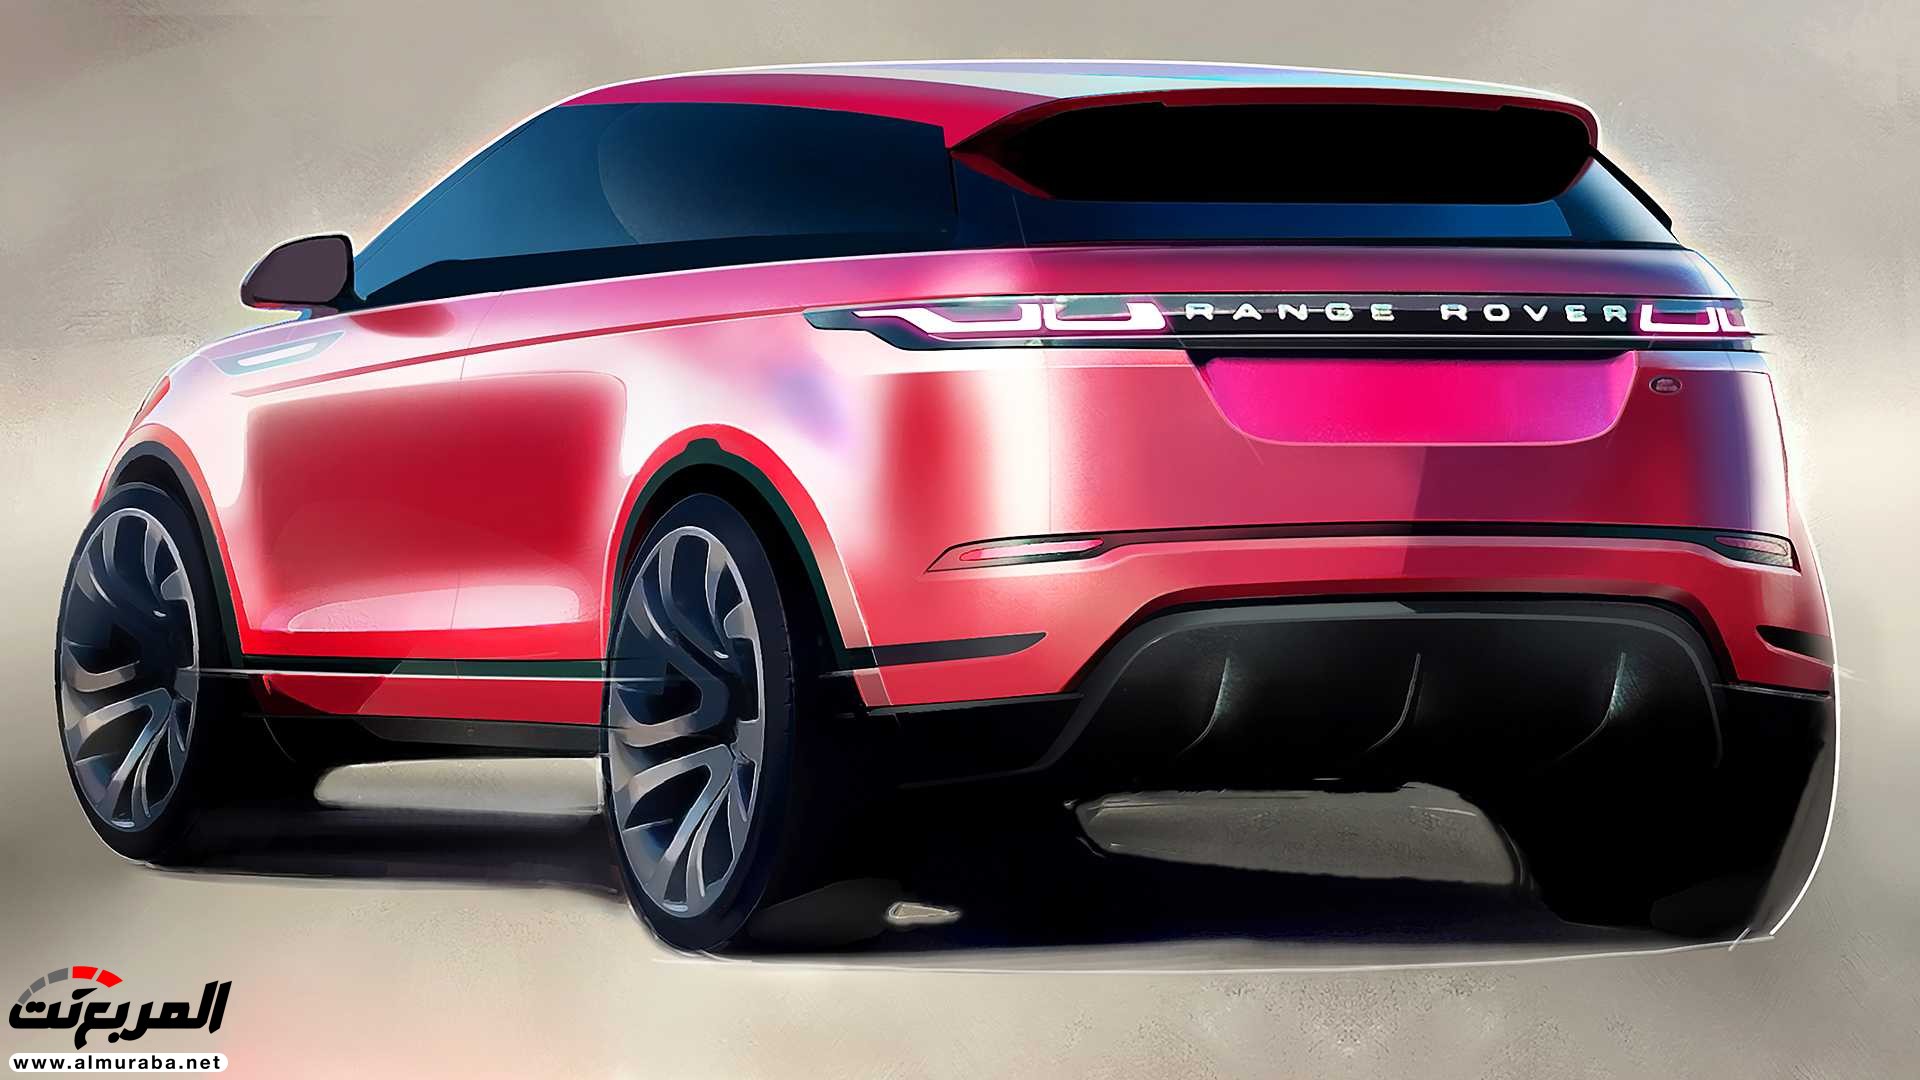 اهم 7 معلومات عن رنج روفر ايفوك 2020 الجديدة كلياً Range Rover Evoque 351